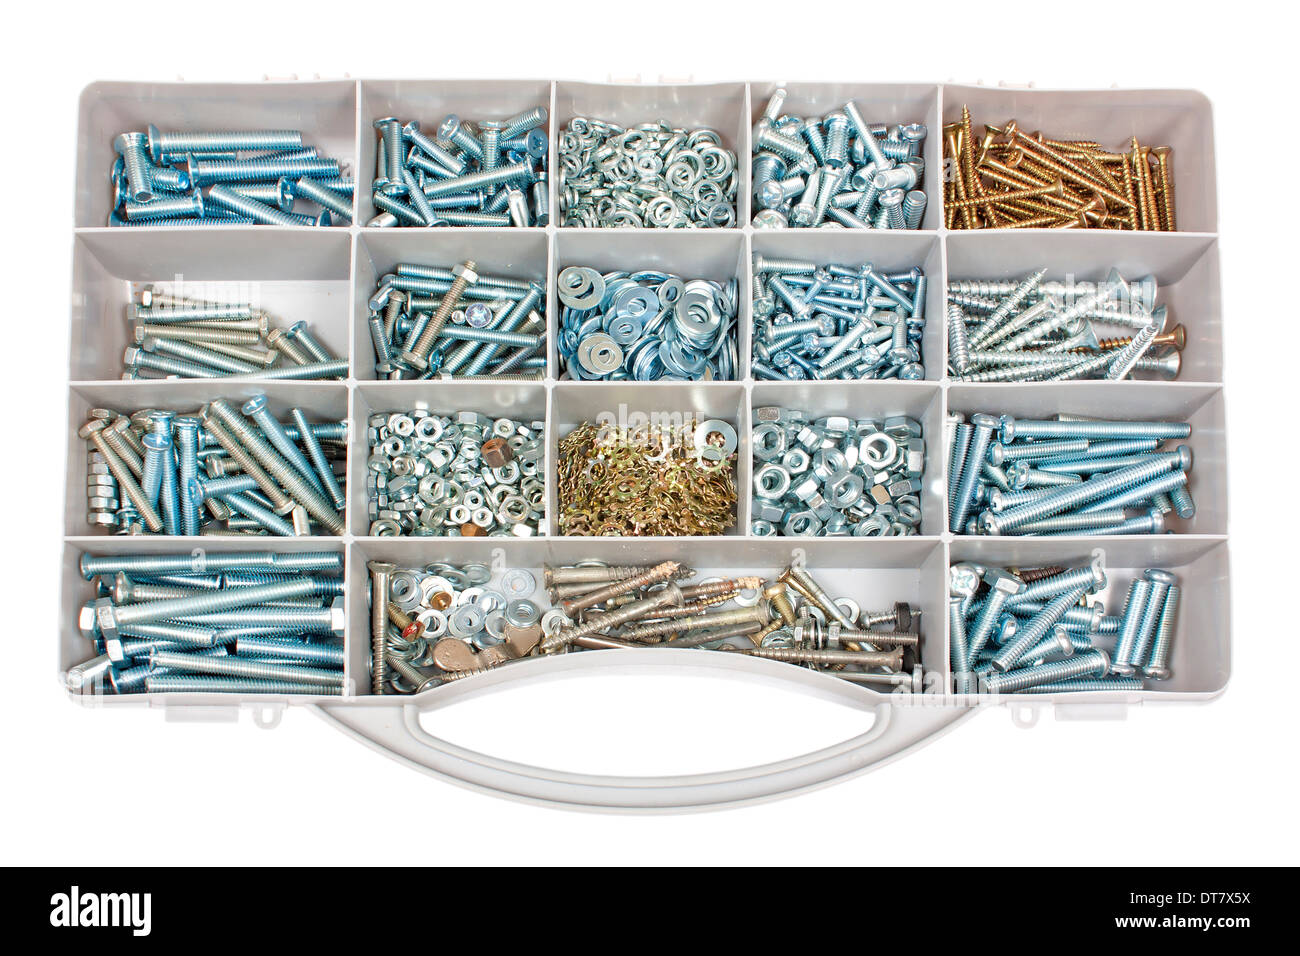 Organizer mit mehreren Schrauben und Muttern verschiedener Größe isoliert  auf weißem Hintergrund Stockfotografie - Alamy